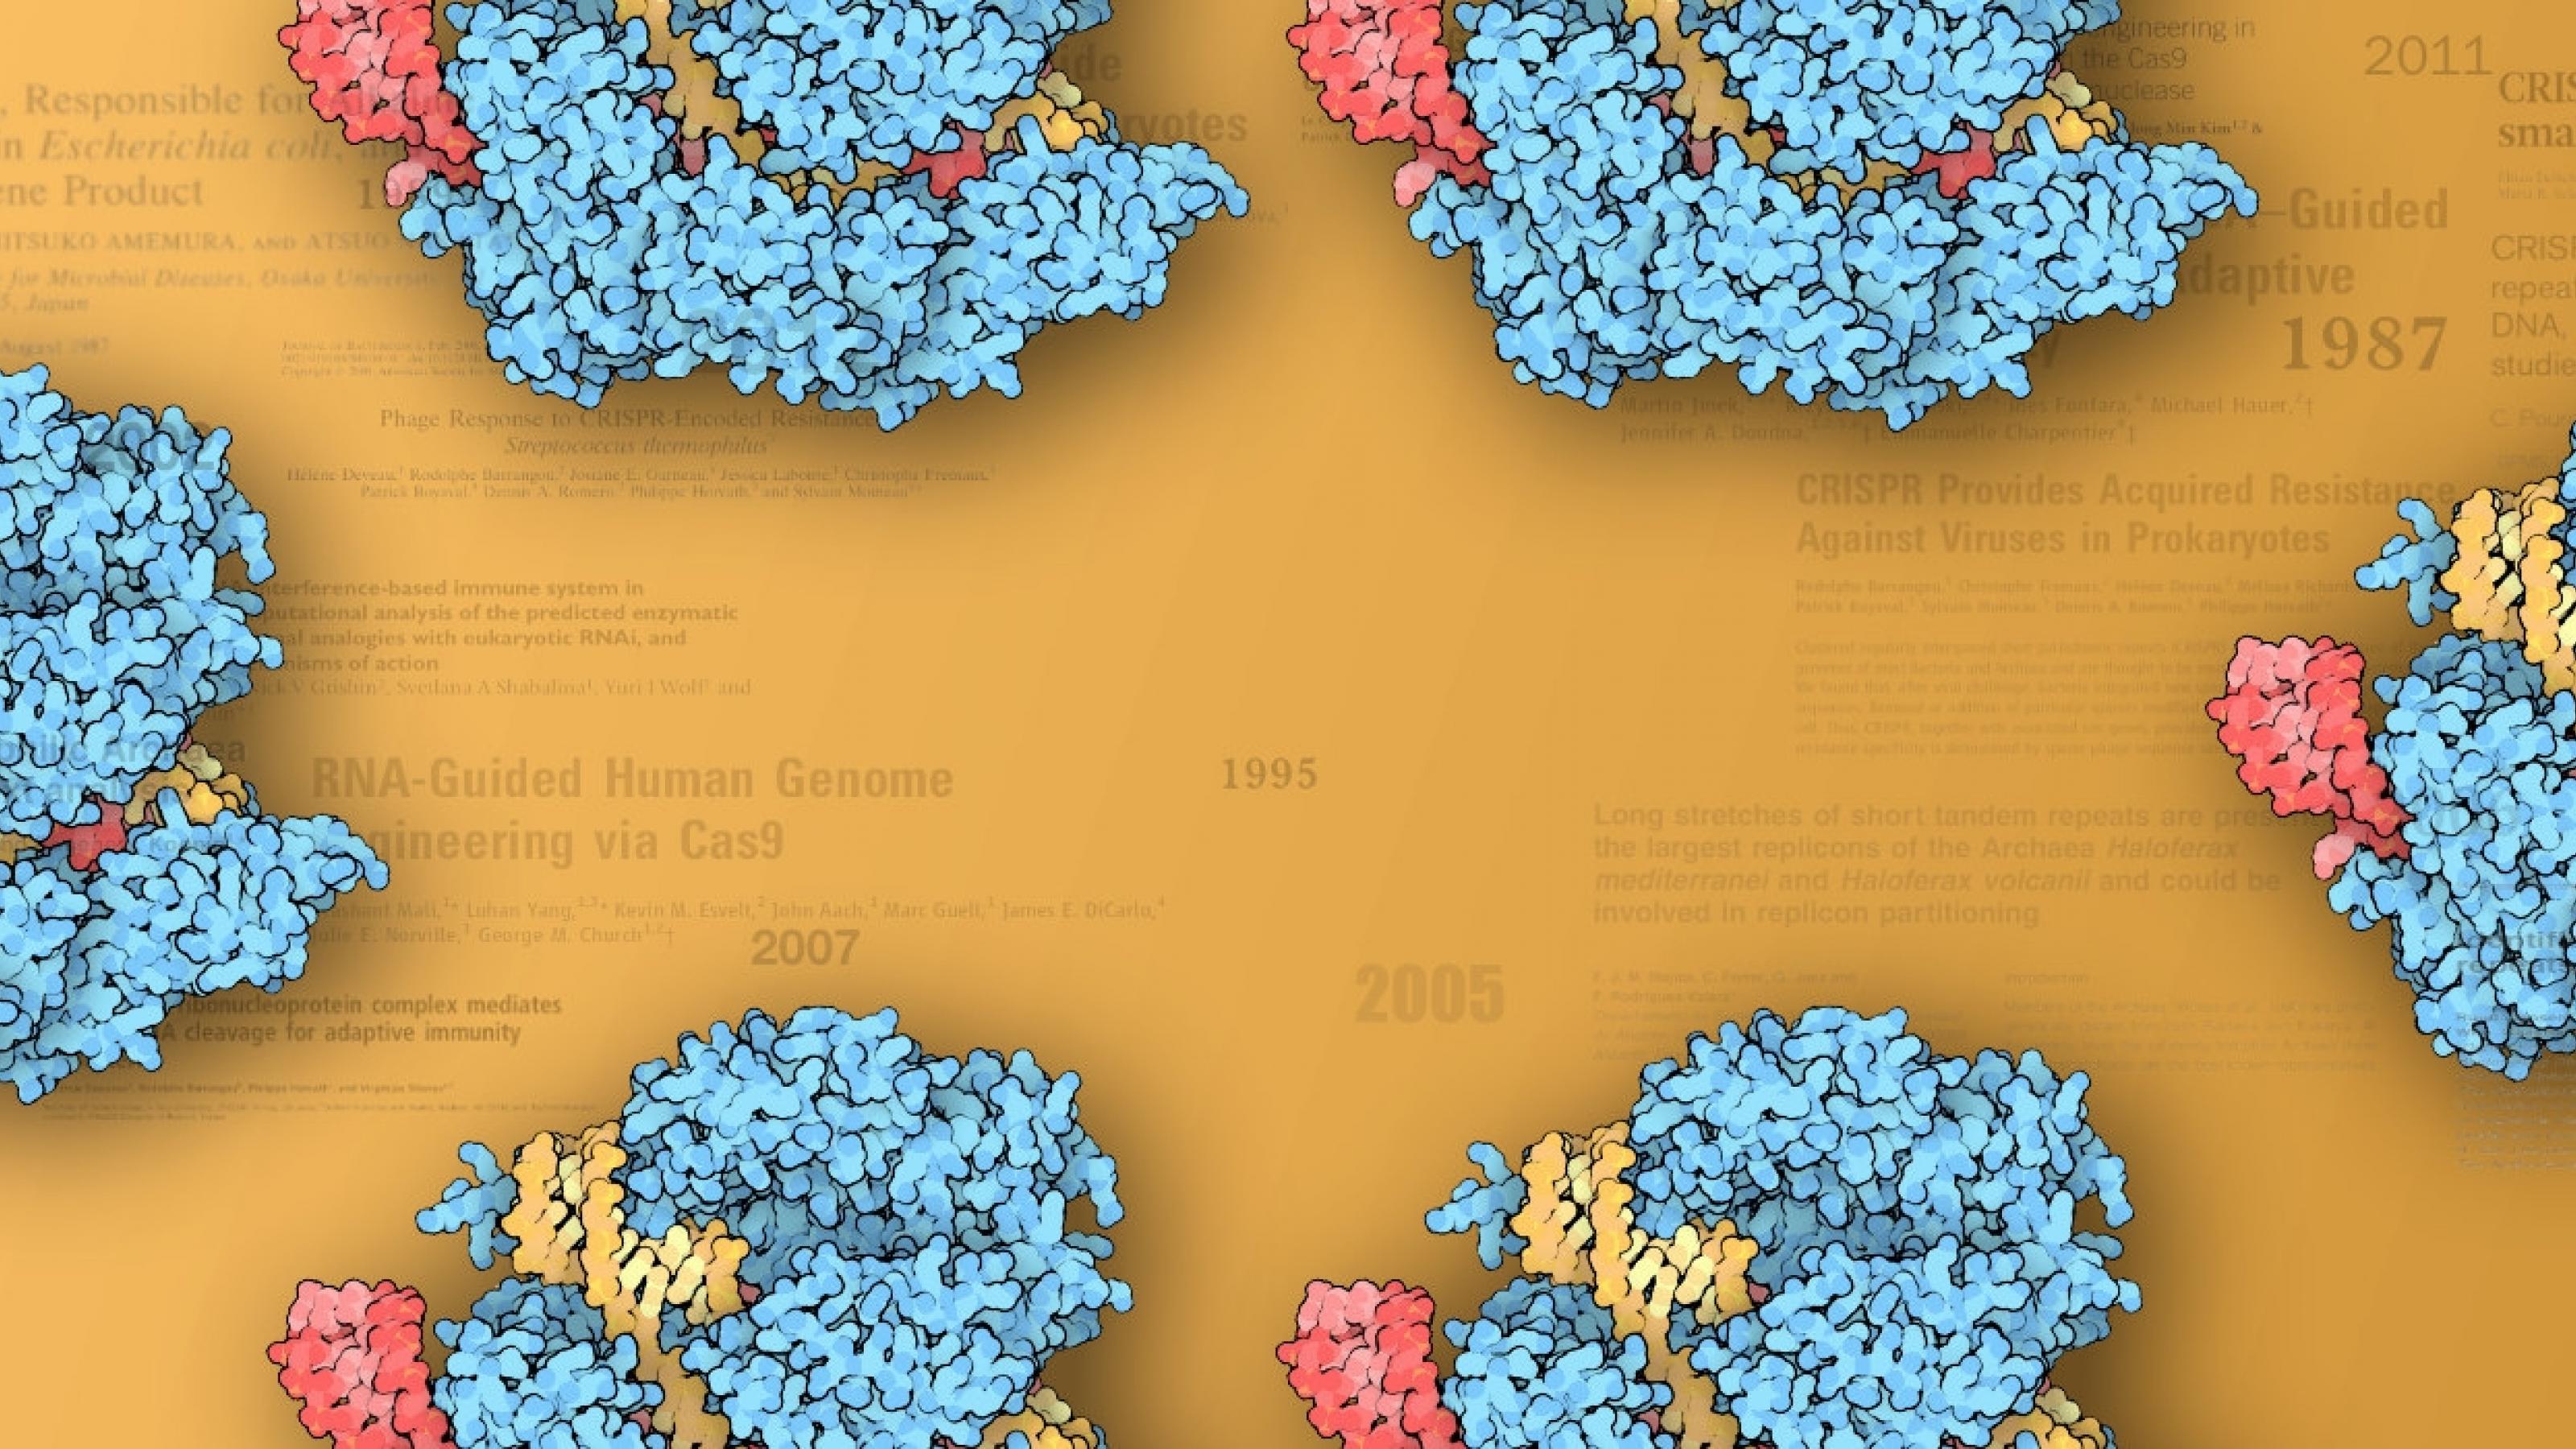 Cas9-Moleküle vor den Titeln wichtiger CRISPR-Fachartikel.